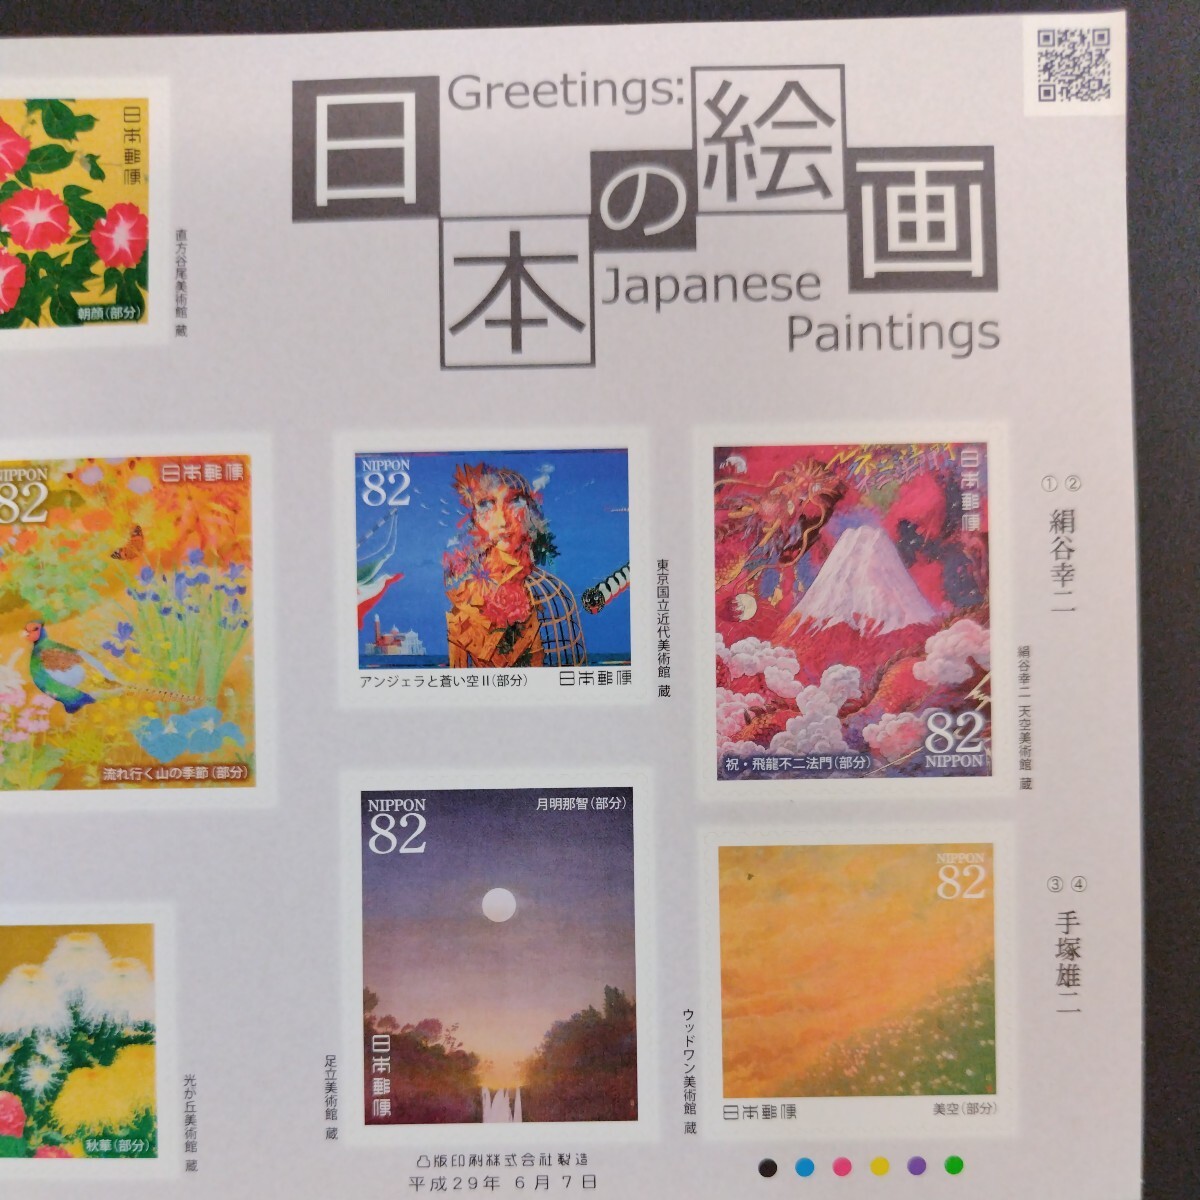 2017(平成29)年発行グリーティング切手(シール式)、「日本の絵画亅、82円10枚、1シート、額面820円。リーフレット付き。の画像4